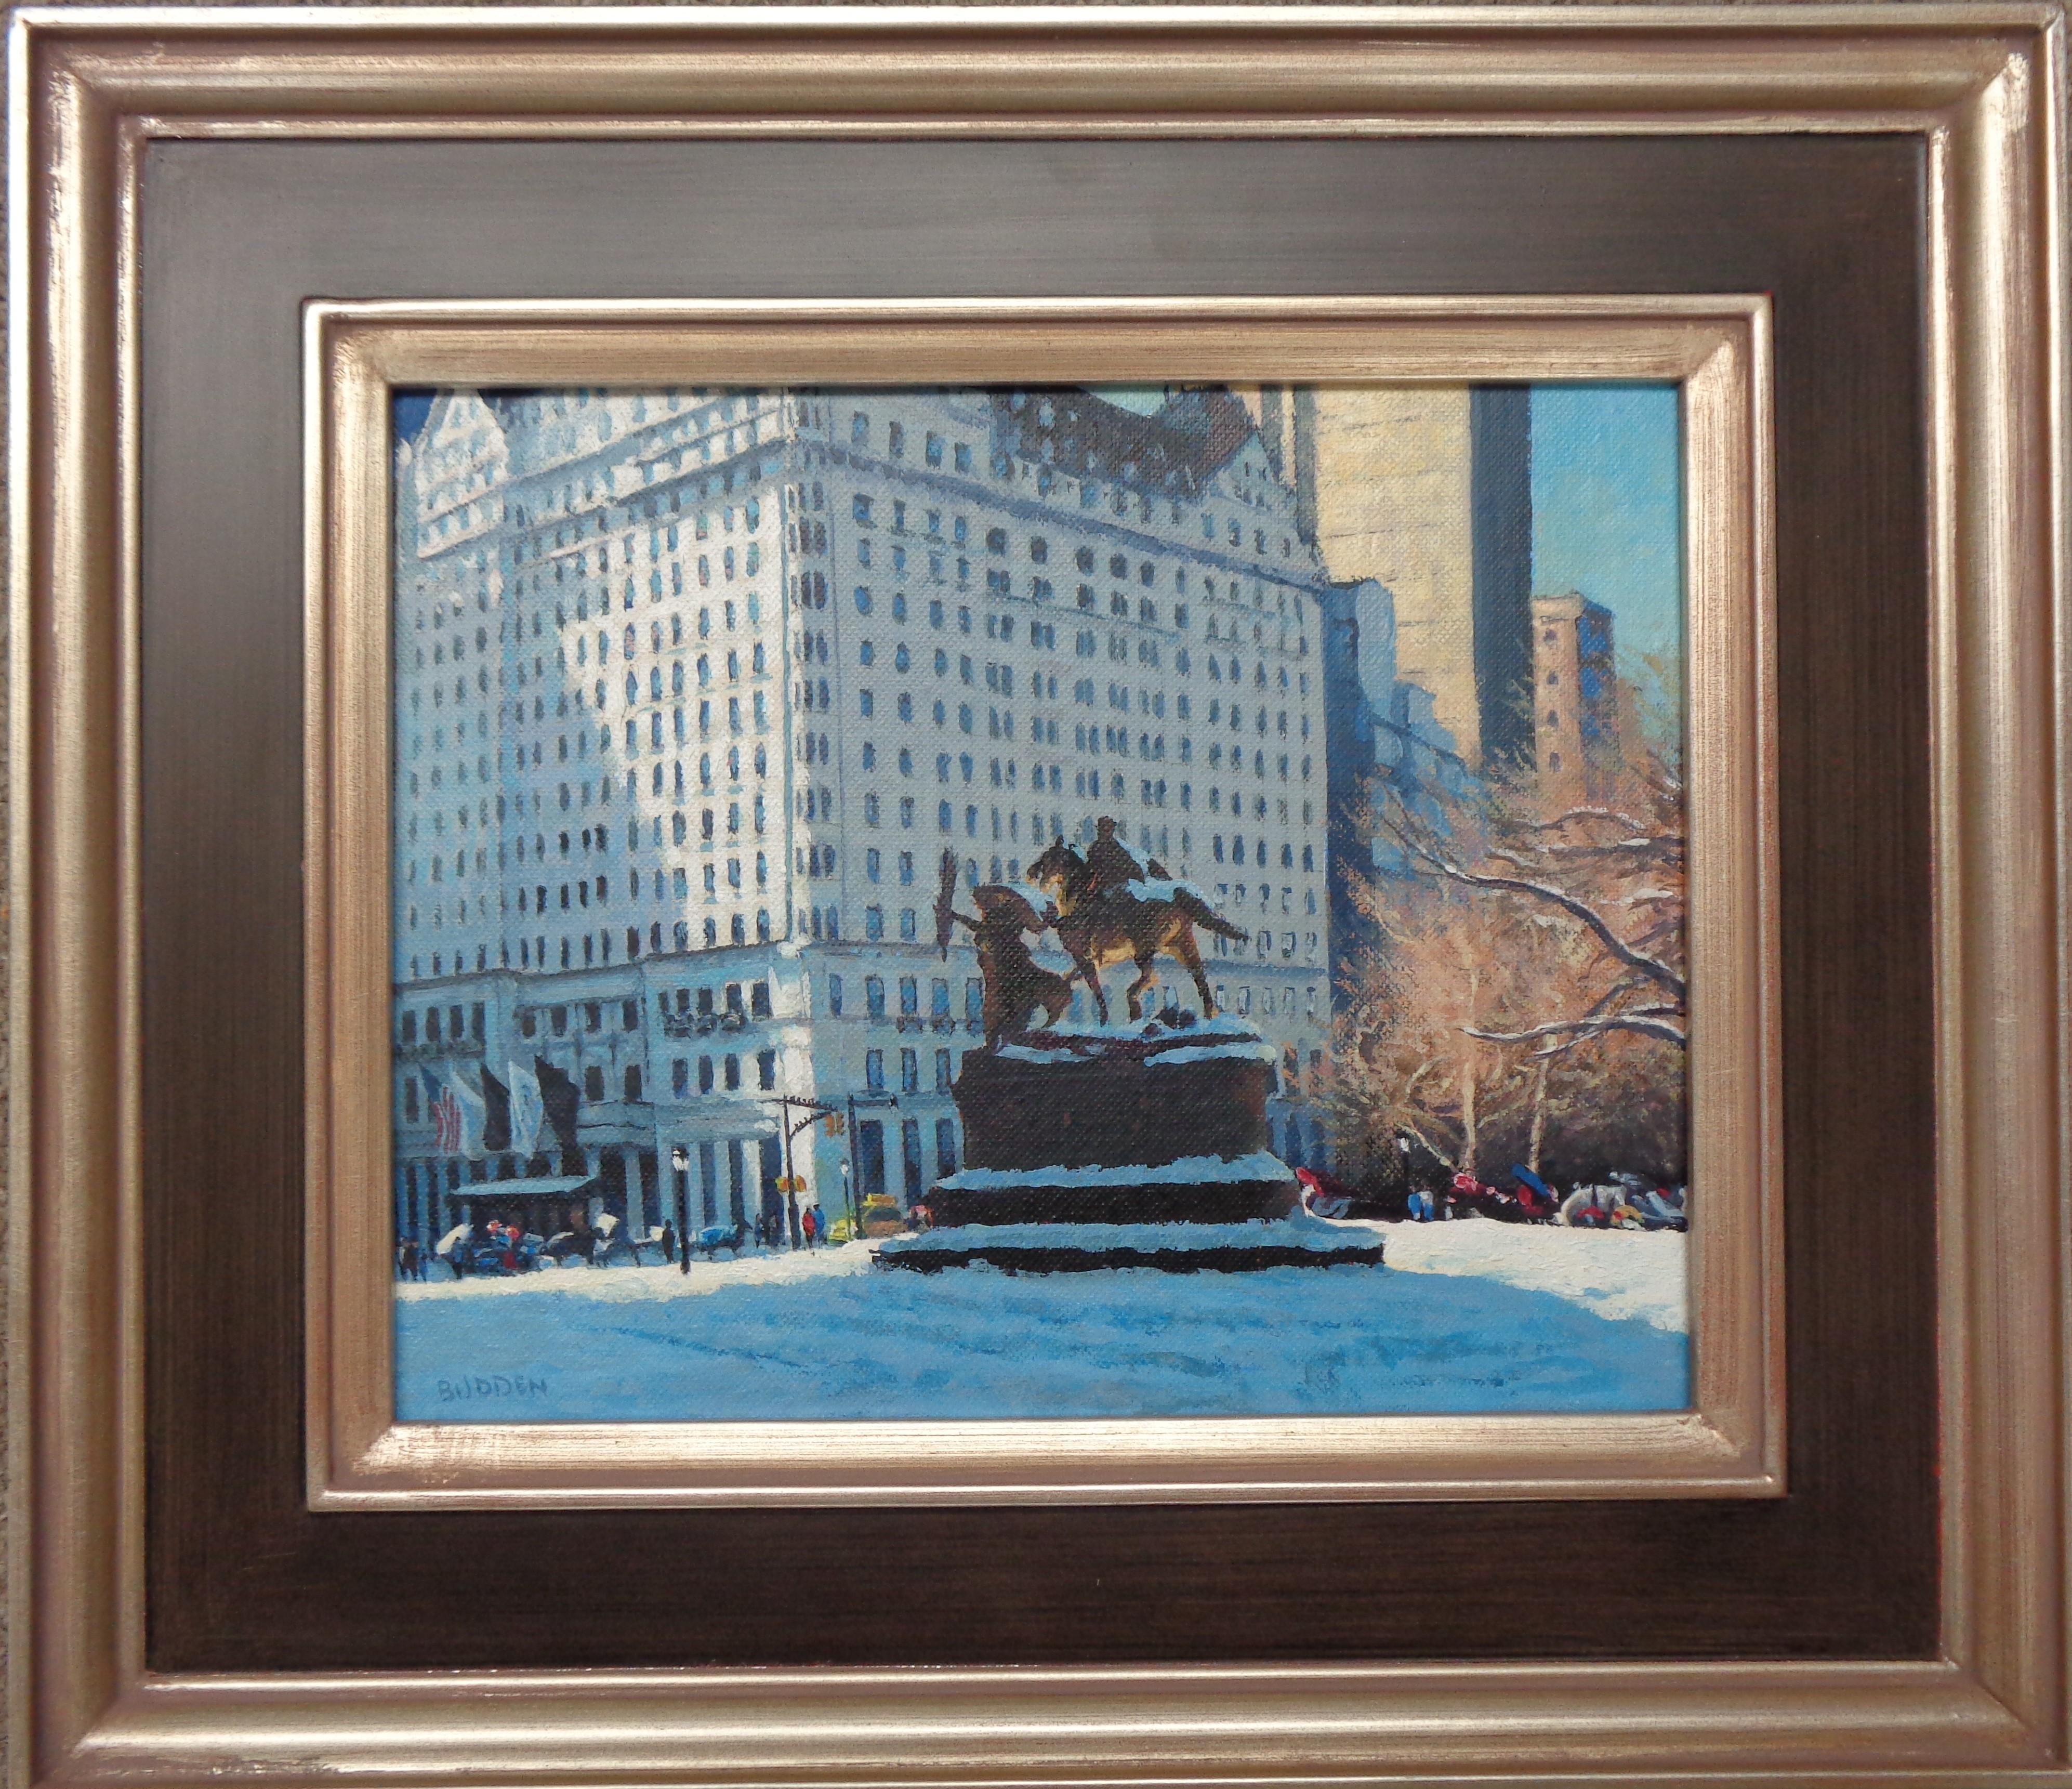  Central Park Grand Army Plaza
Öl/Platte
8 x 10 Bild ungerahmt 12,63 x 14,5 gerahmt
 ist ein Ölgemälde  auf Leinwand von dem preisgekrönten zeitgenössischen Künstler Michael Budden. Dies ist eine meiner Lieblingsgegenden in NYC, um zu staunen und